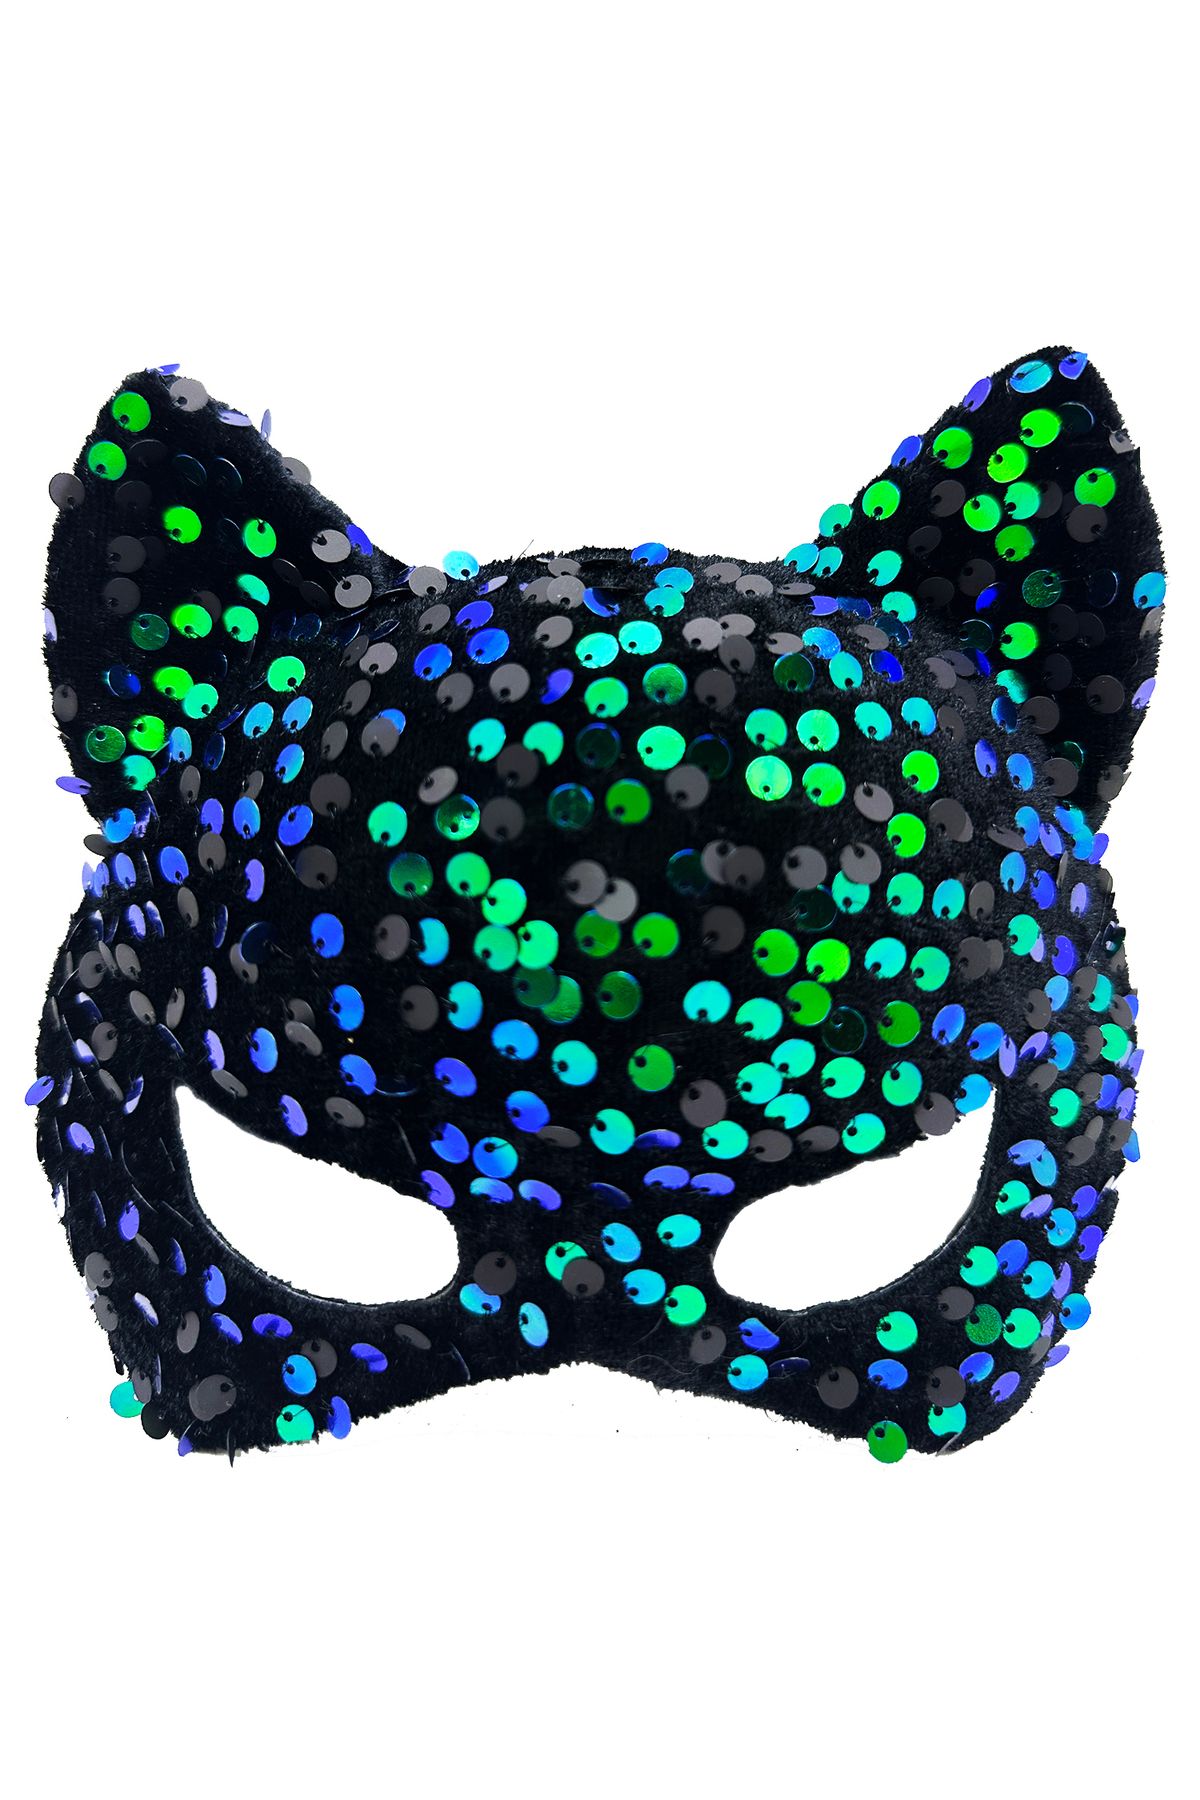 Afrodit Siyah Kadife Kumaş Üzerine Mavi Yeşil Payetli Pullu Parti Maskesi 16x14 cm (CLZ)